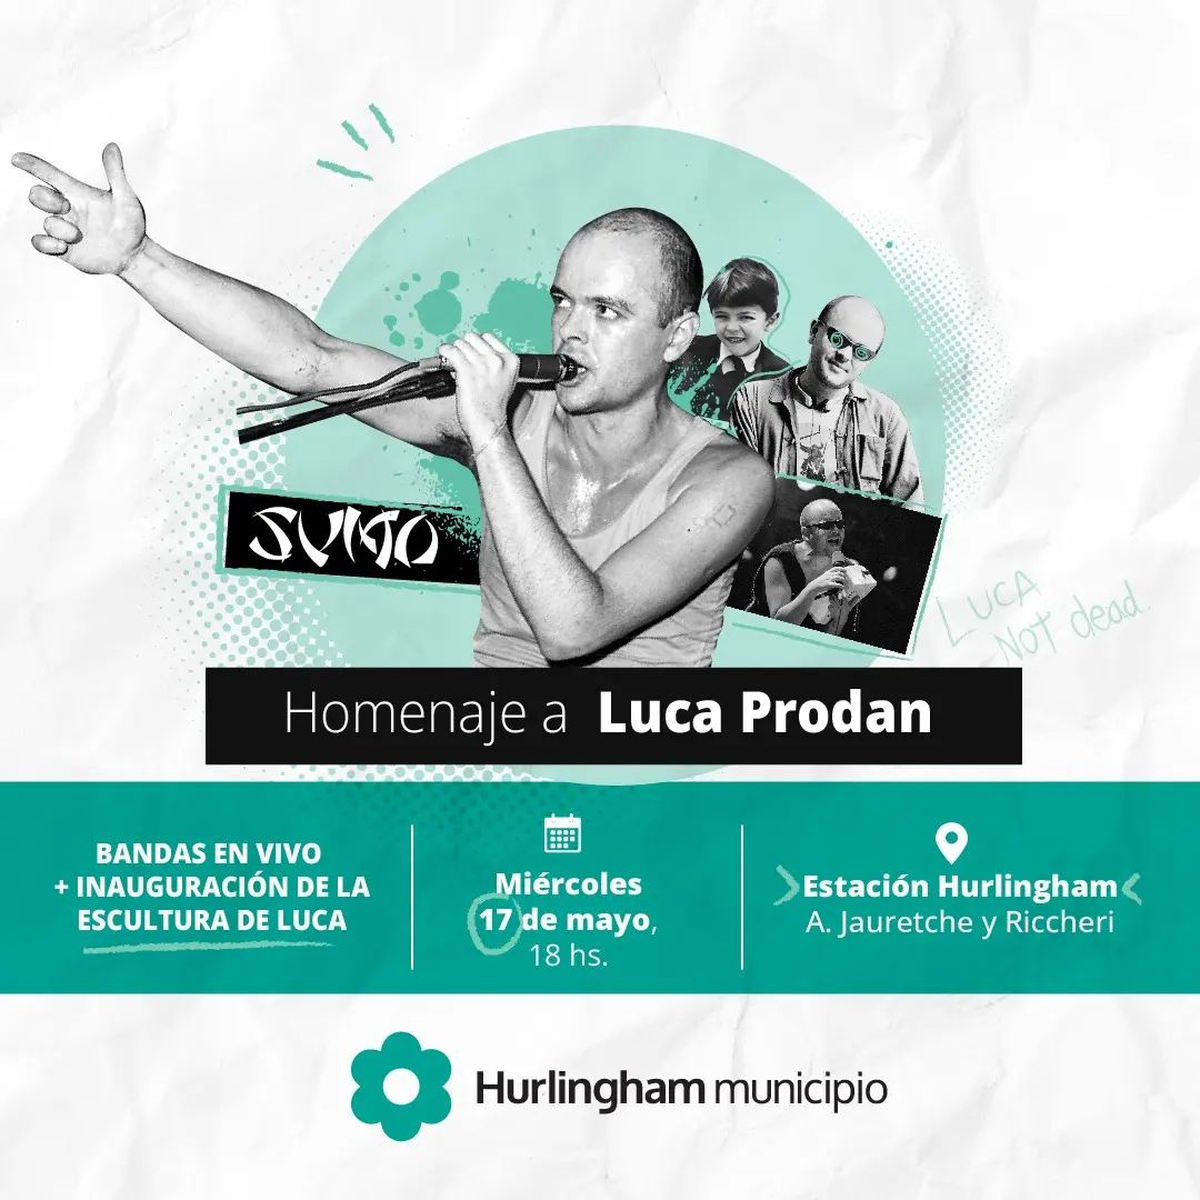 Homenaje a Luca Prodan en Hurlingham.